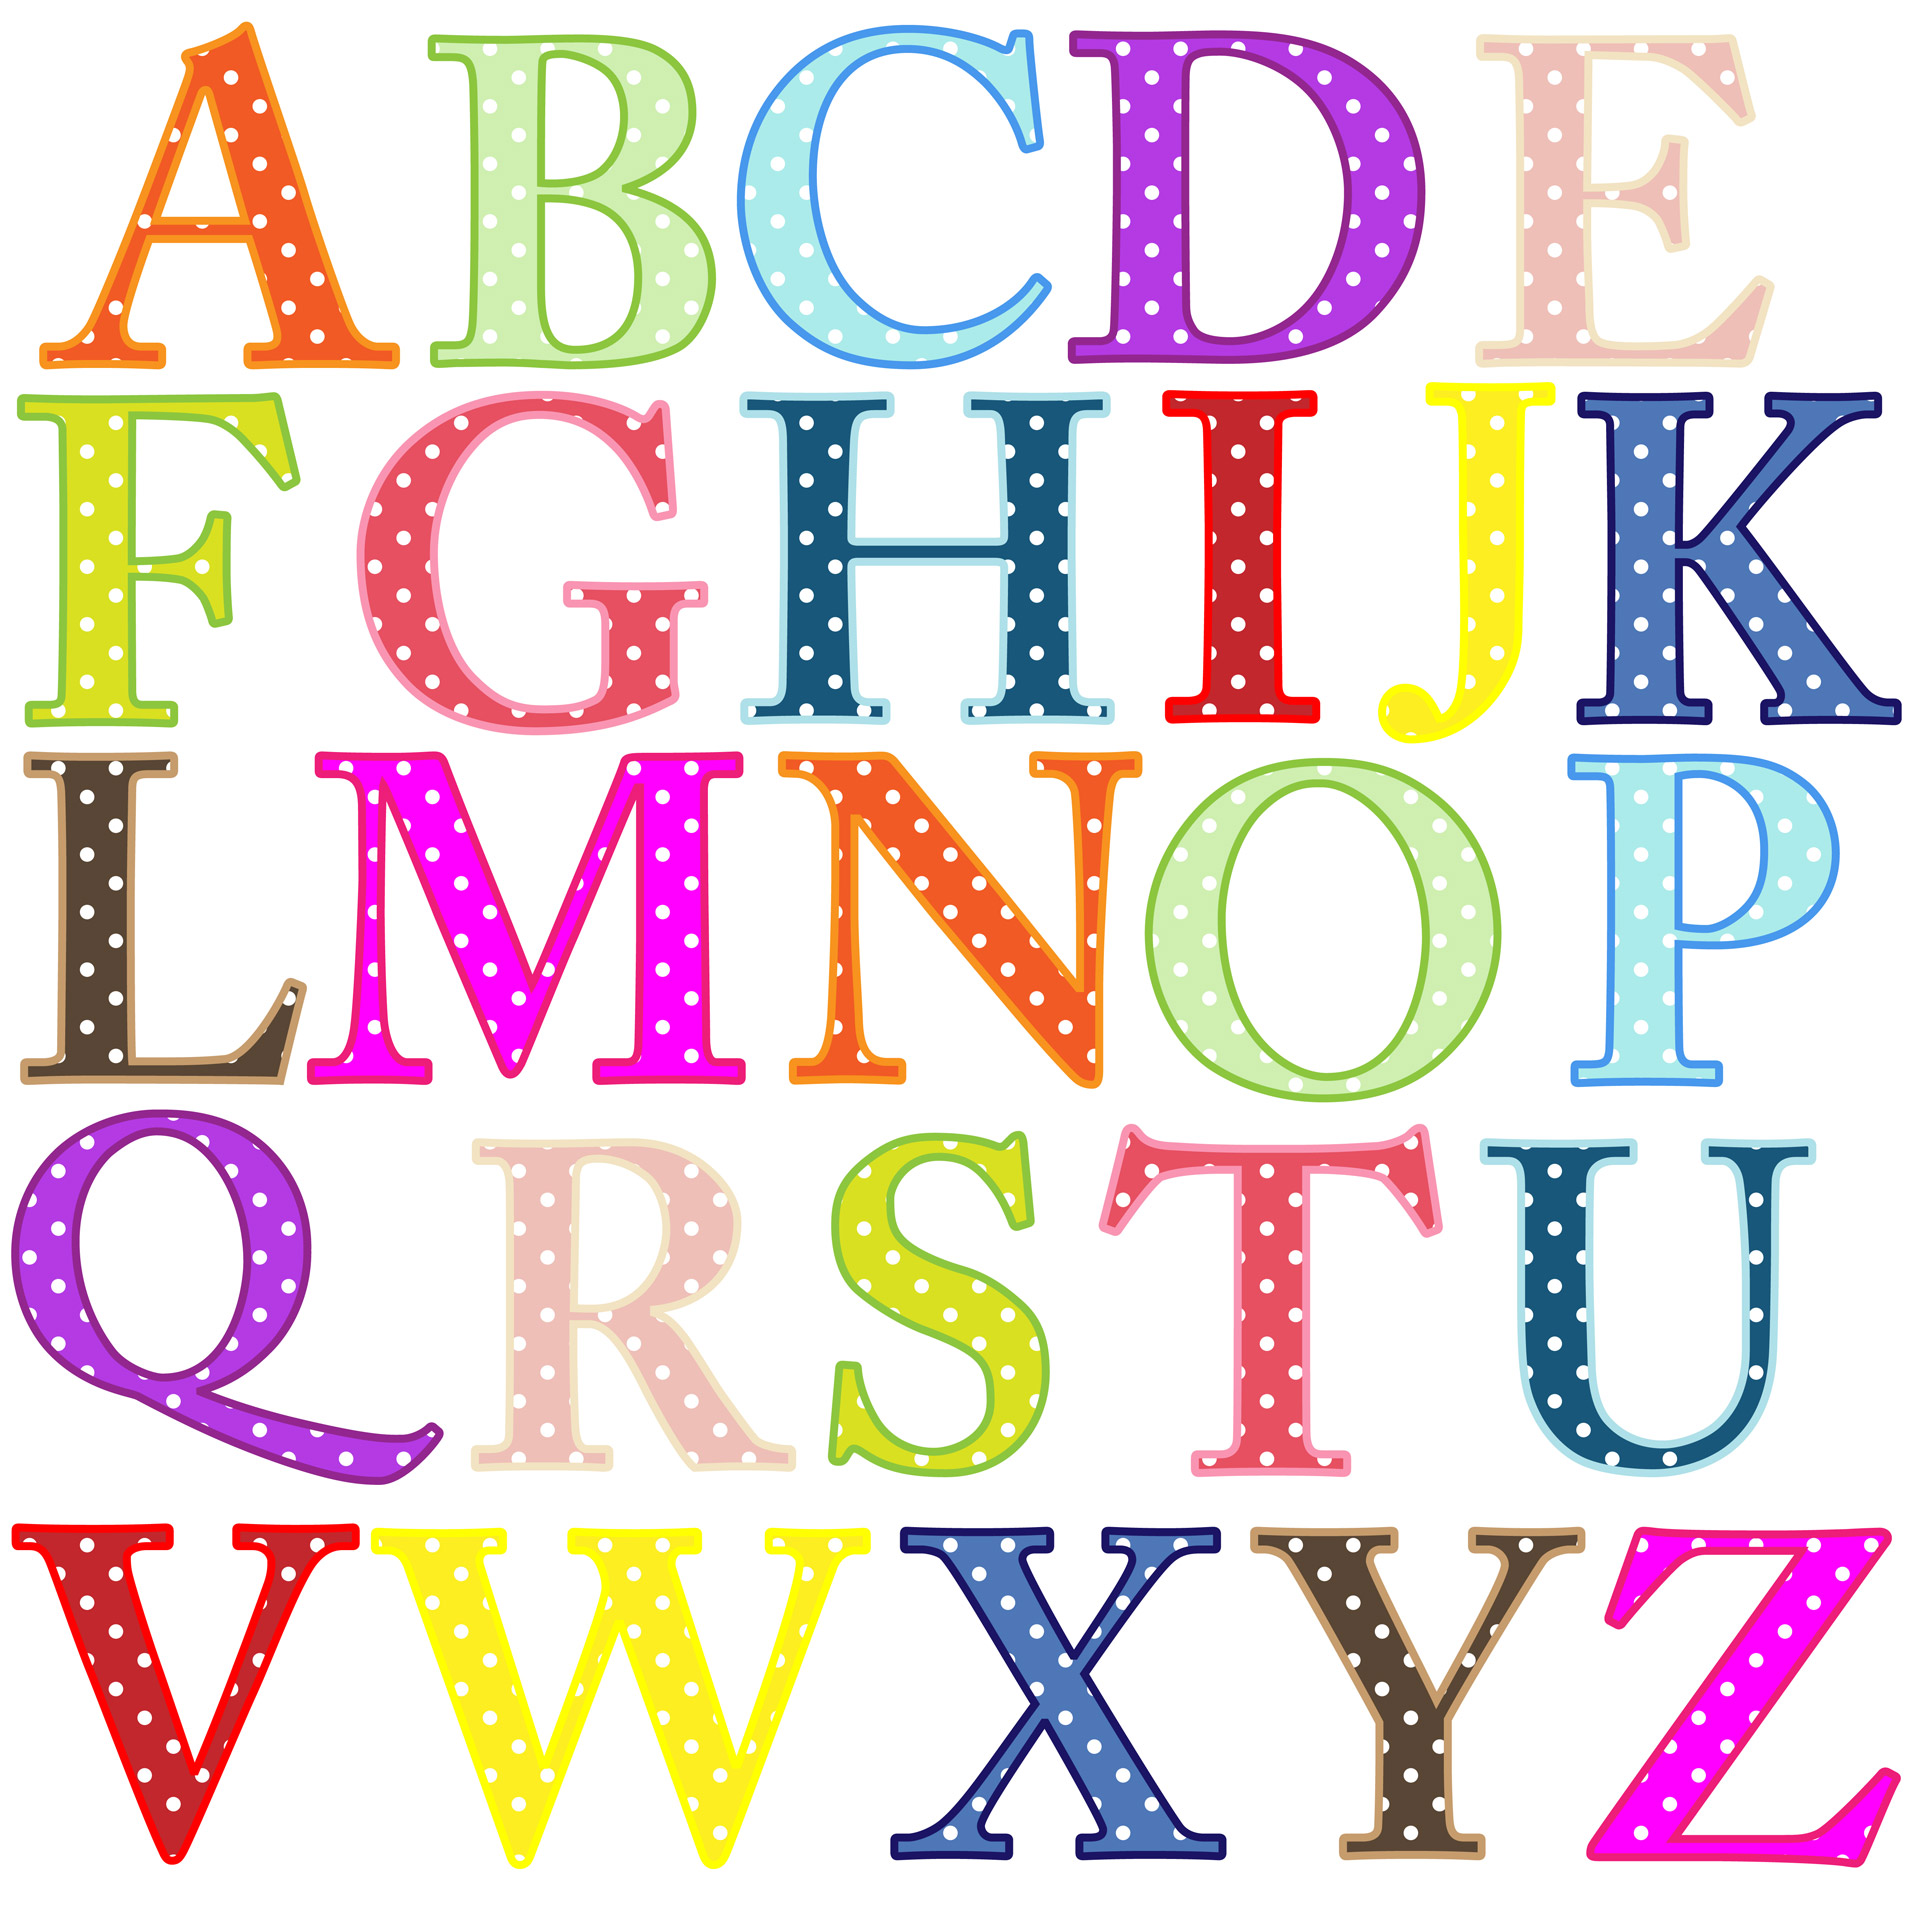 free clip art large alphabet letters - photo #2